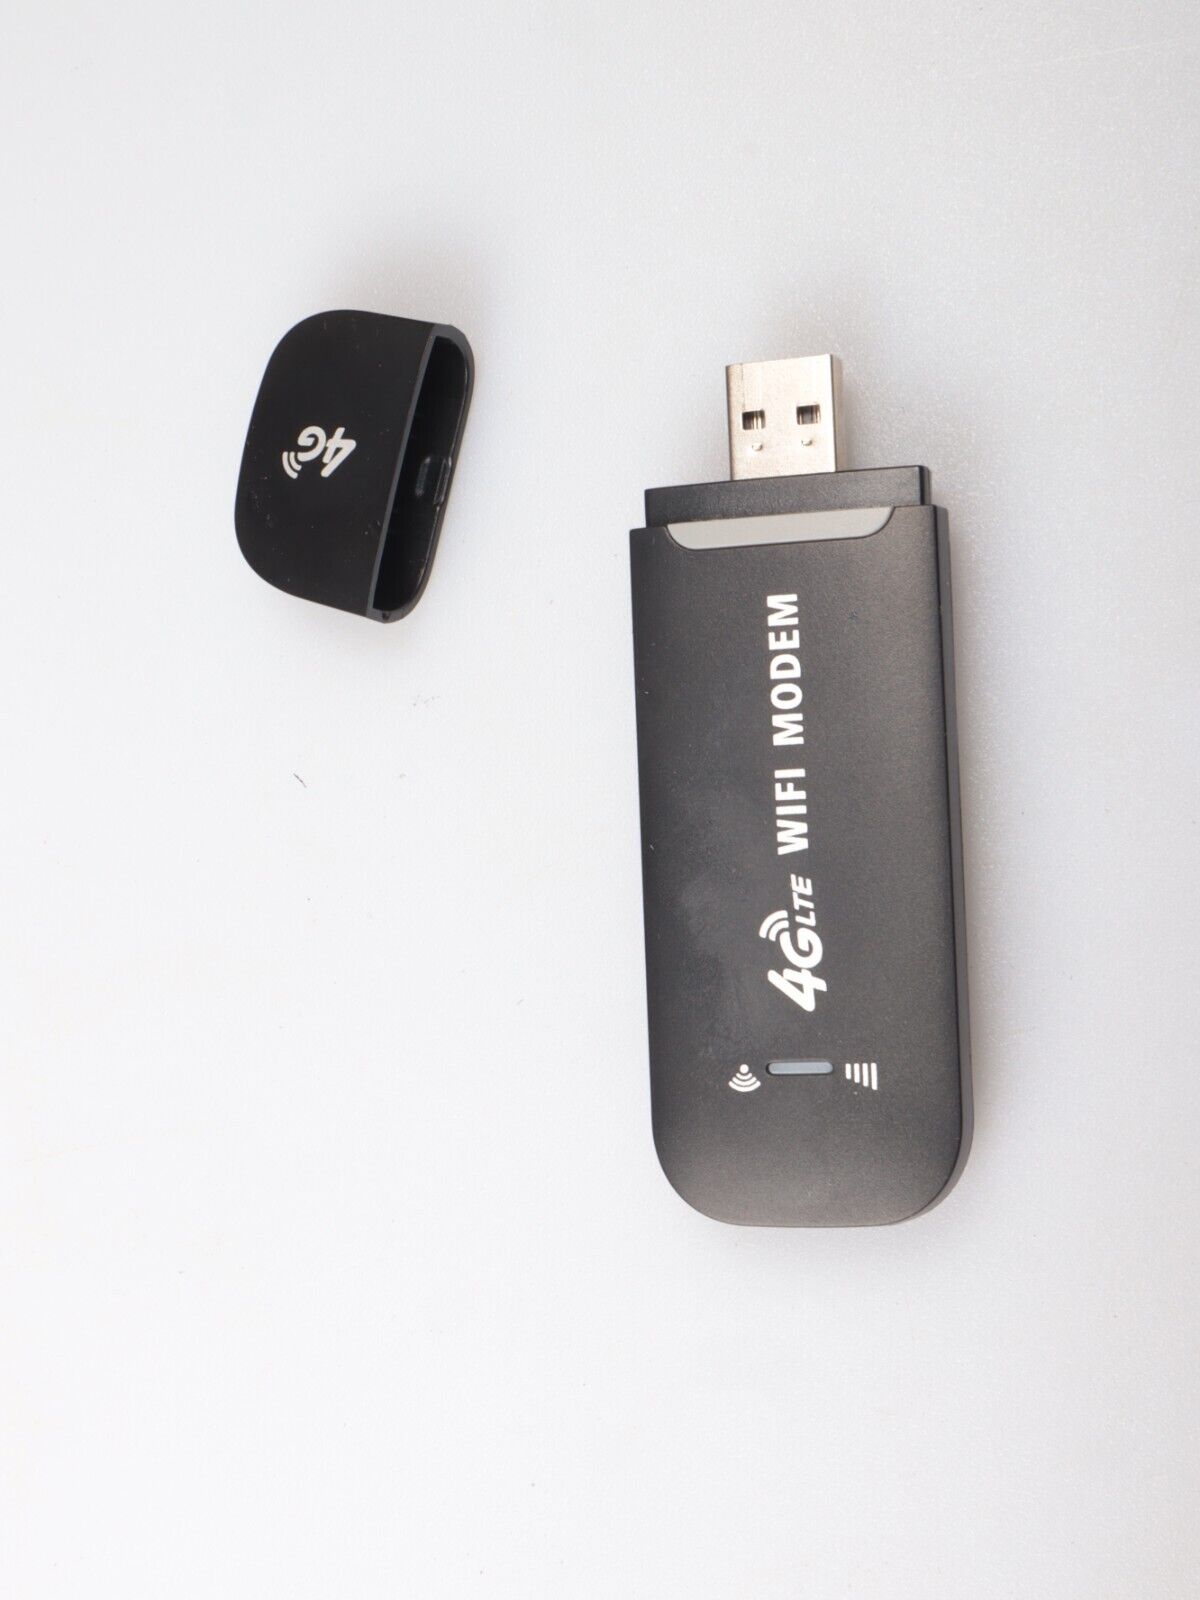 4G LTE USB Modem | WiFi Wireless Network Adapter Hotspot